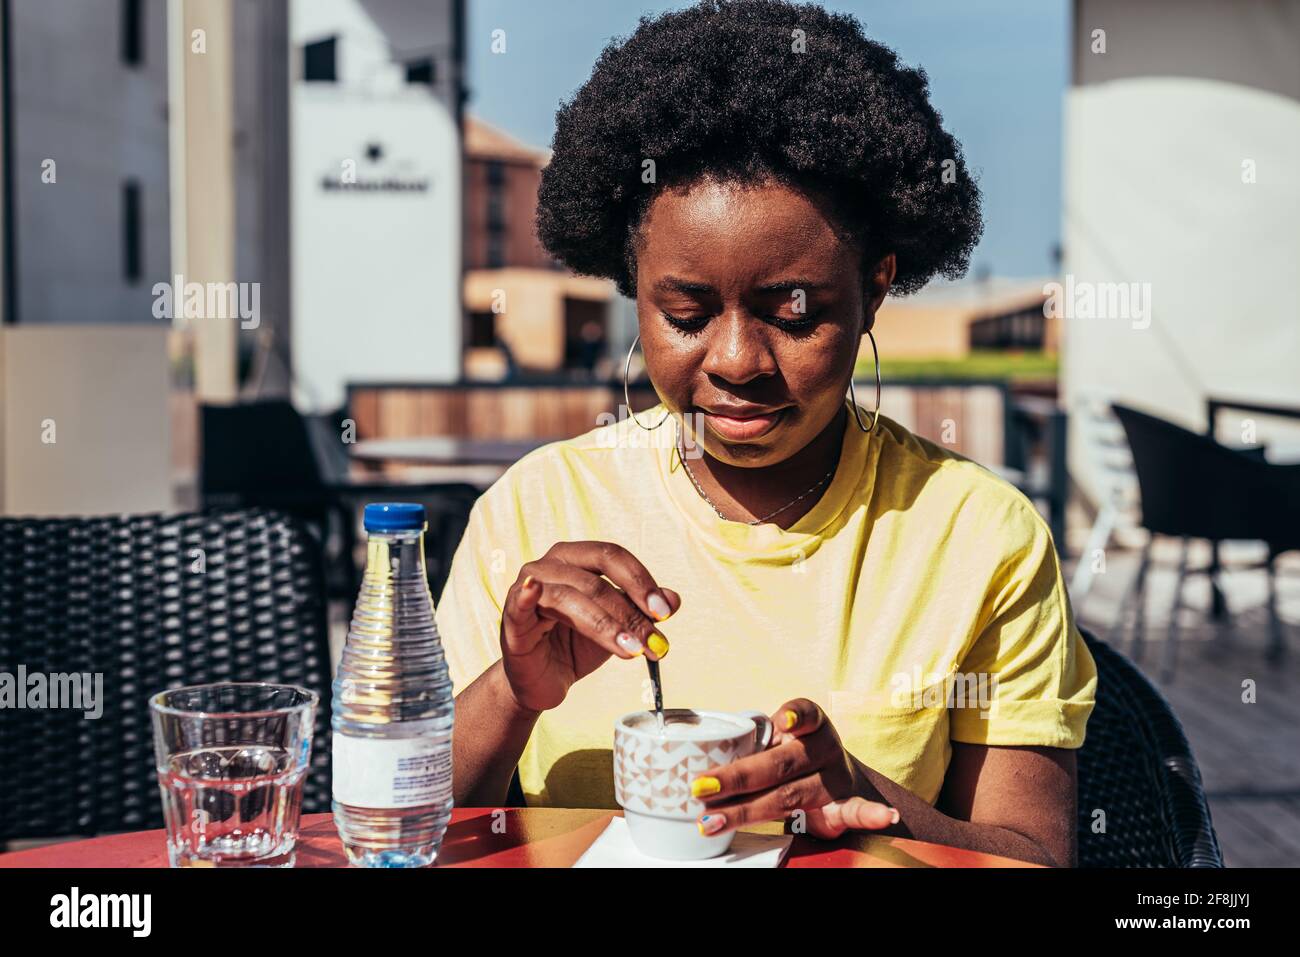 Porträt eines schwarzen Mädchens mit Afro-Haaren und Reifringen, das Kaffee und eine Flasche Wasser auf einer Barterrasse trinkt. Stockfoto